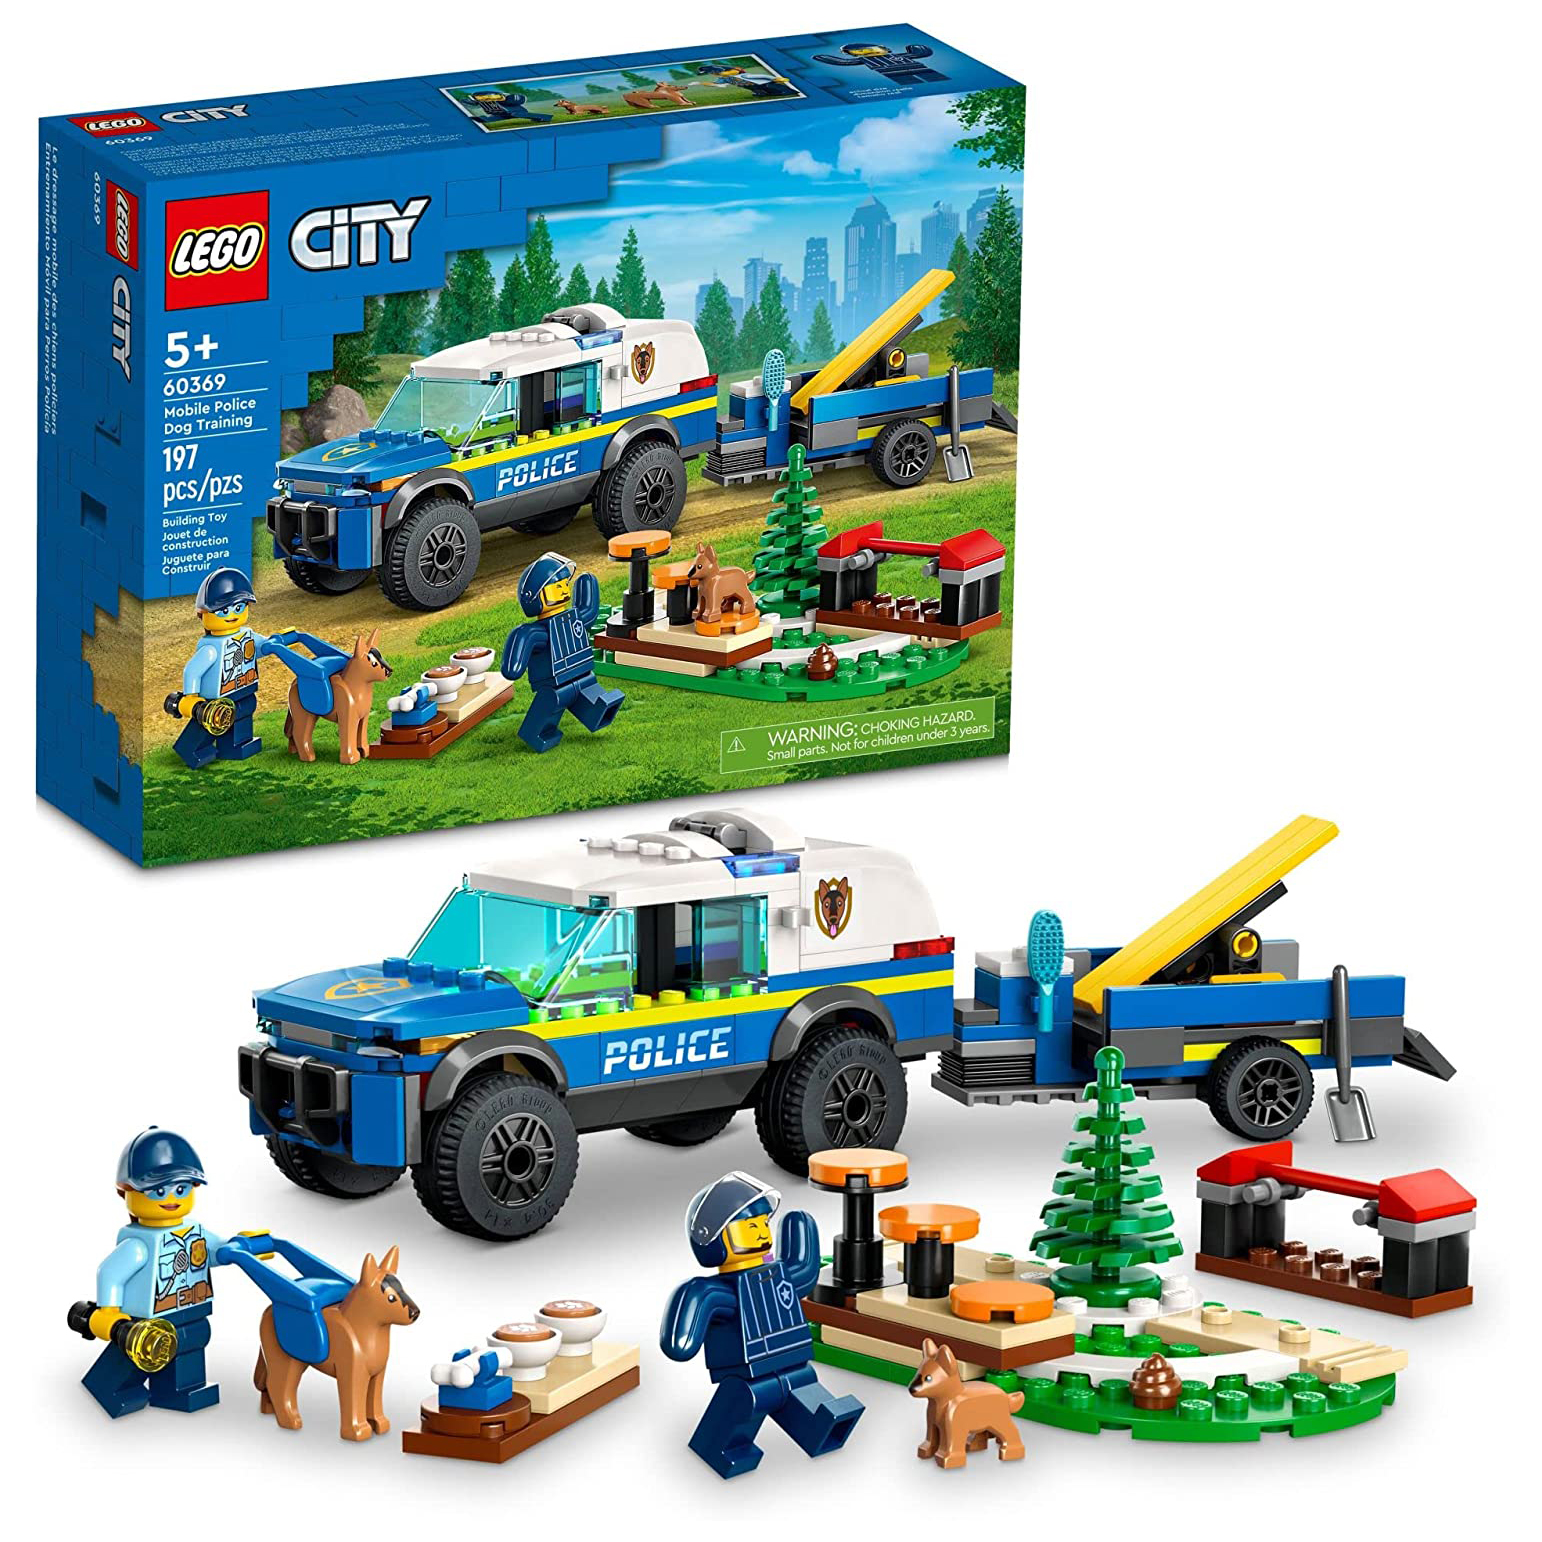 Конструктор LEGO City Дрессировка полицейской собаки на выезде, 197 деталей, 60369 ротвейлер фигурка собаки